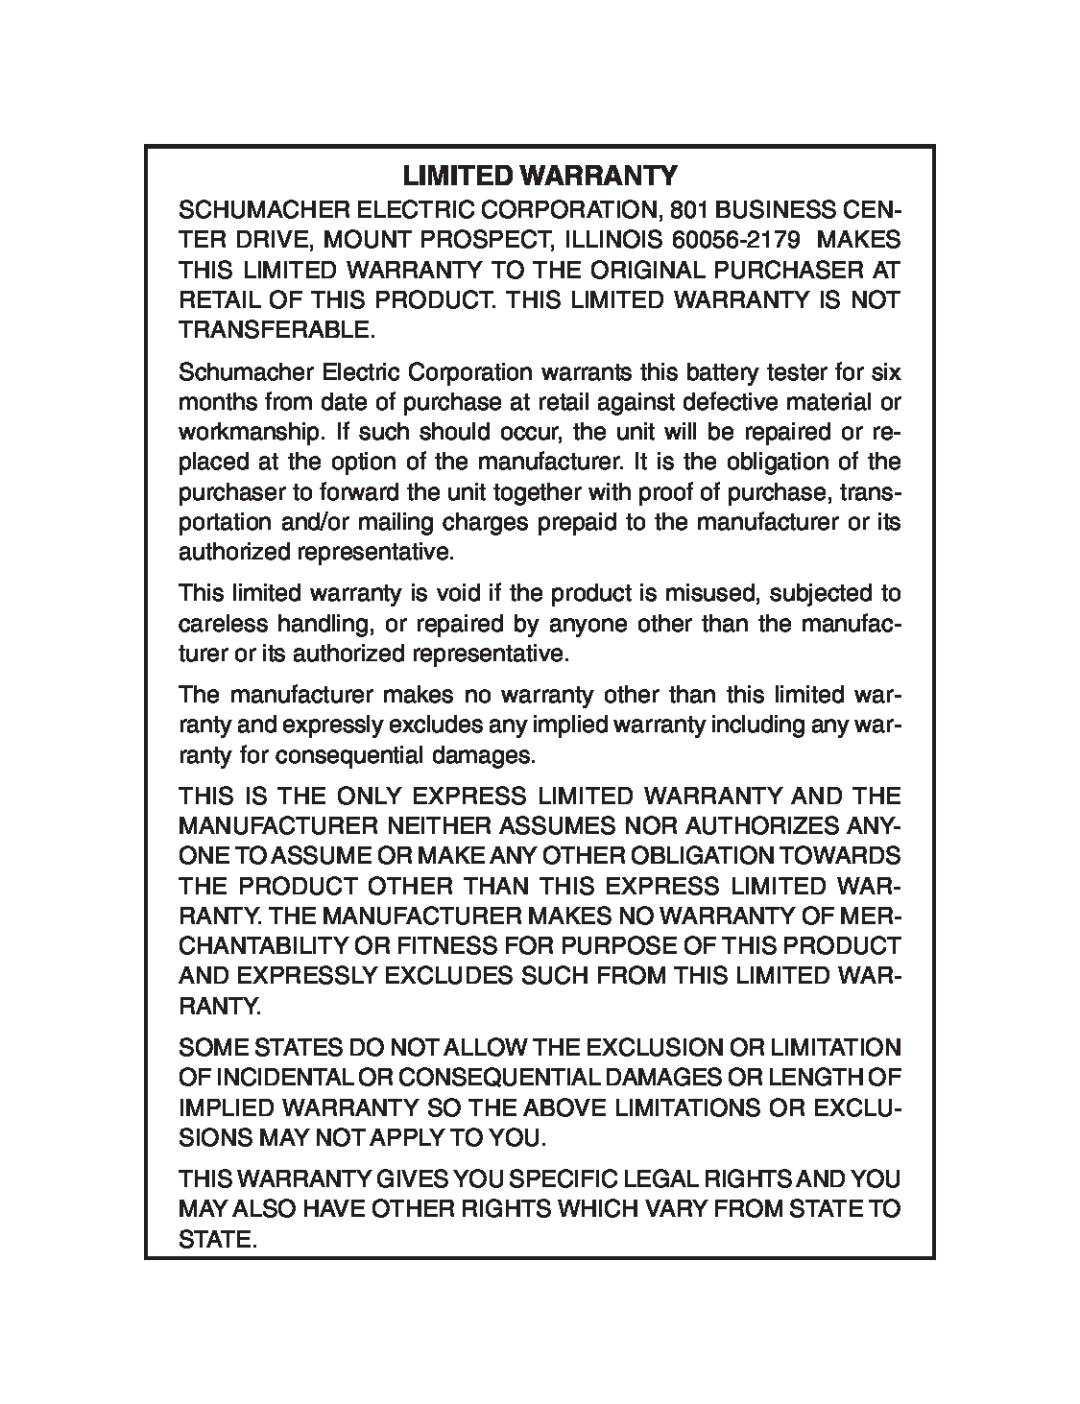 Schumacher BT-100 owner manual Limited Warranty 